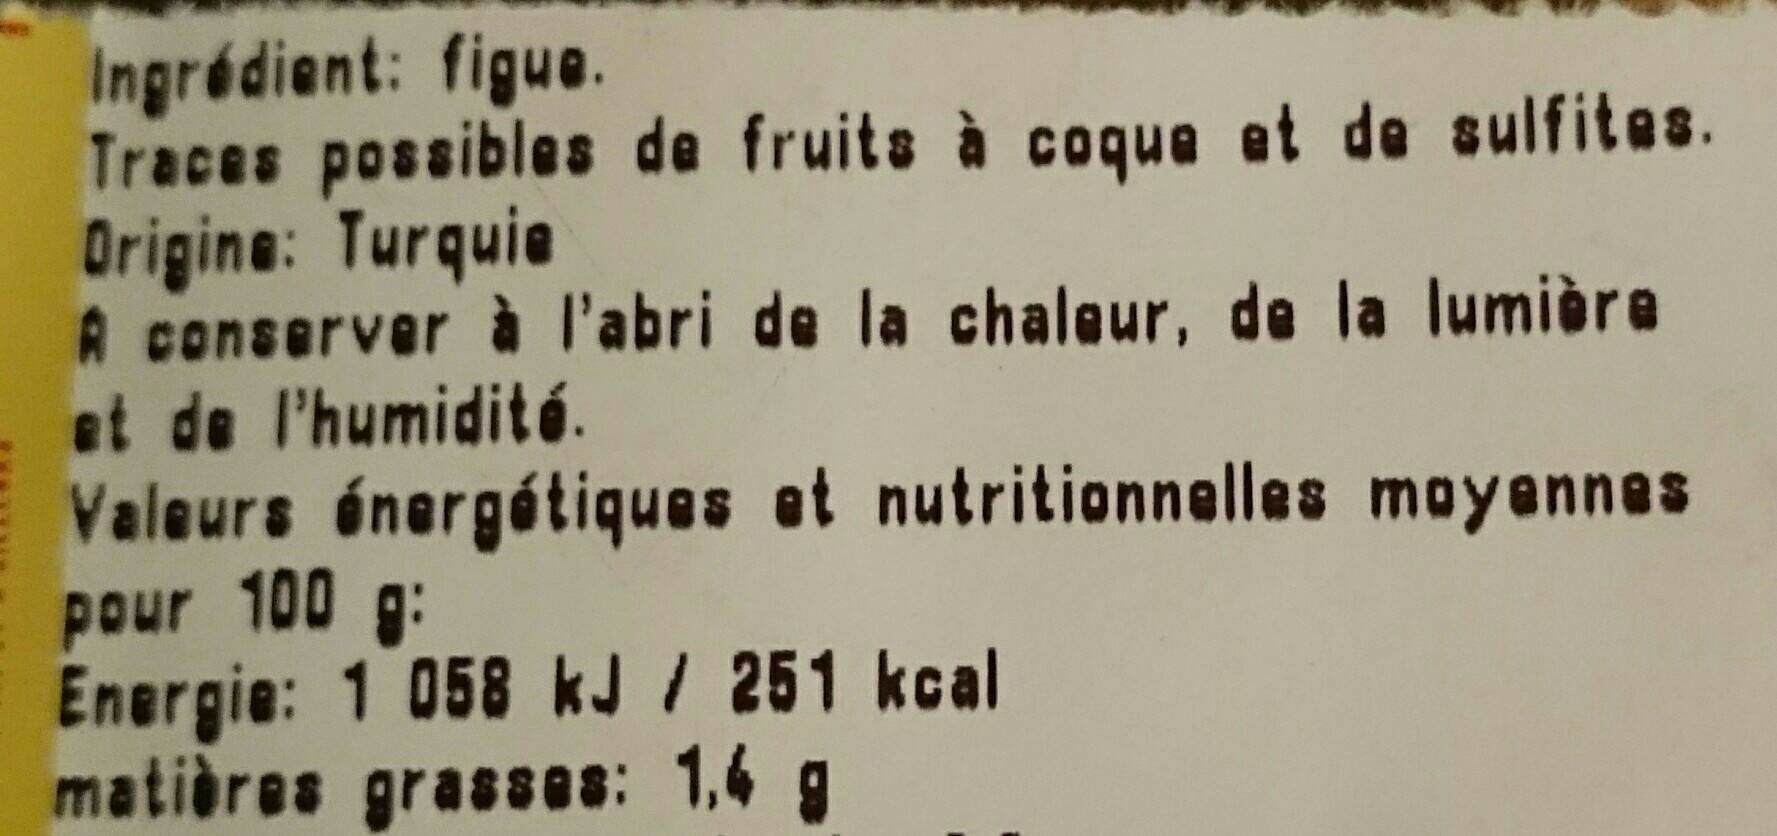 Figue bermuda - Ingredients - fr